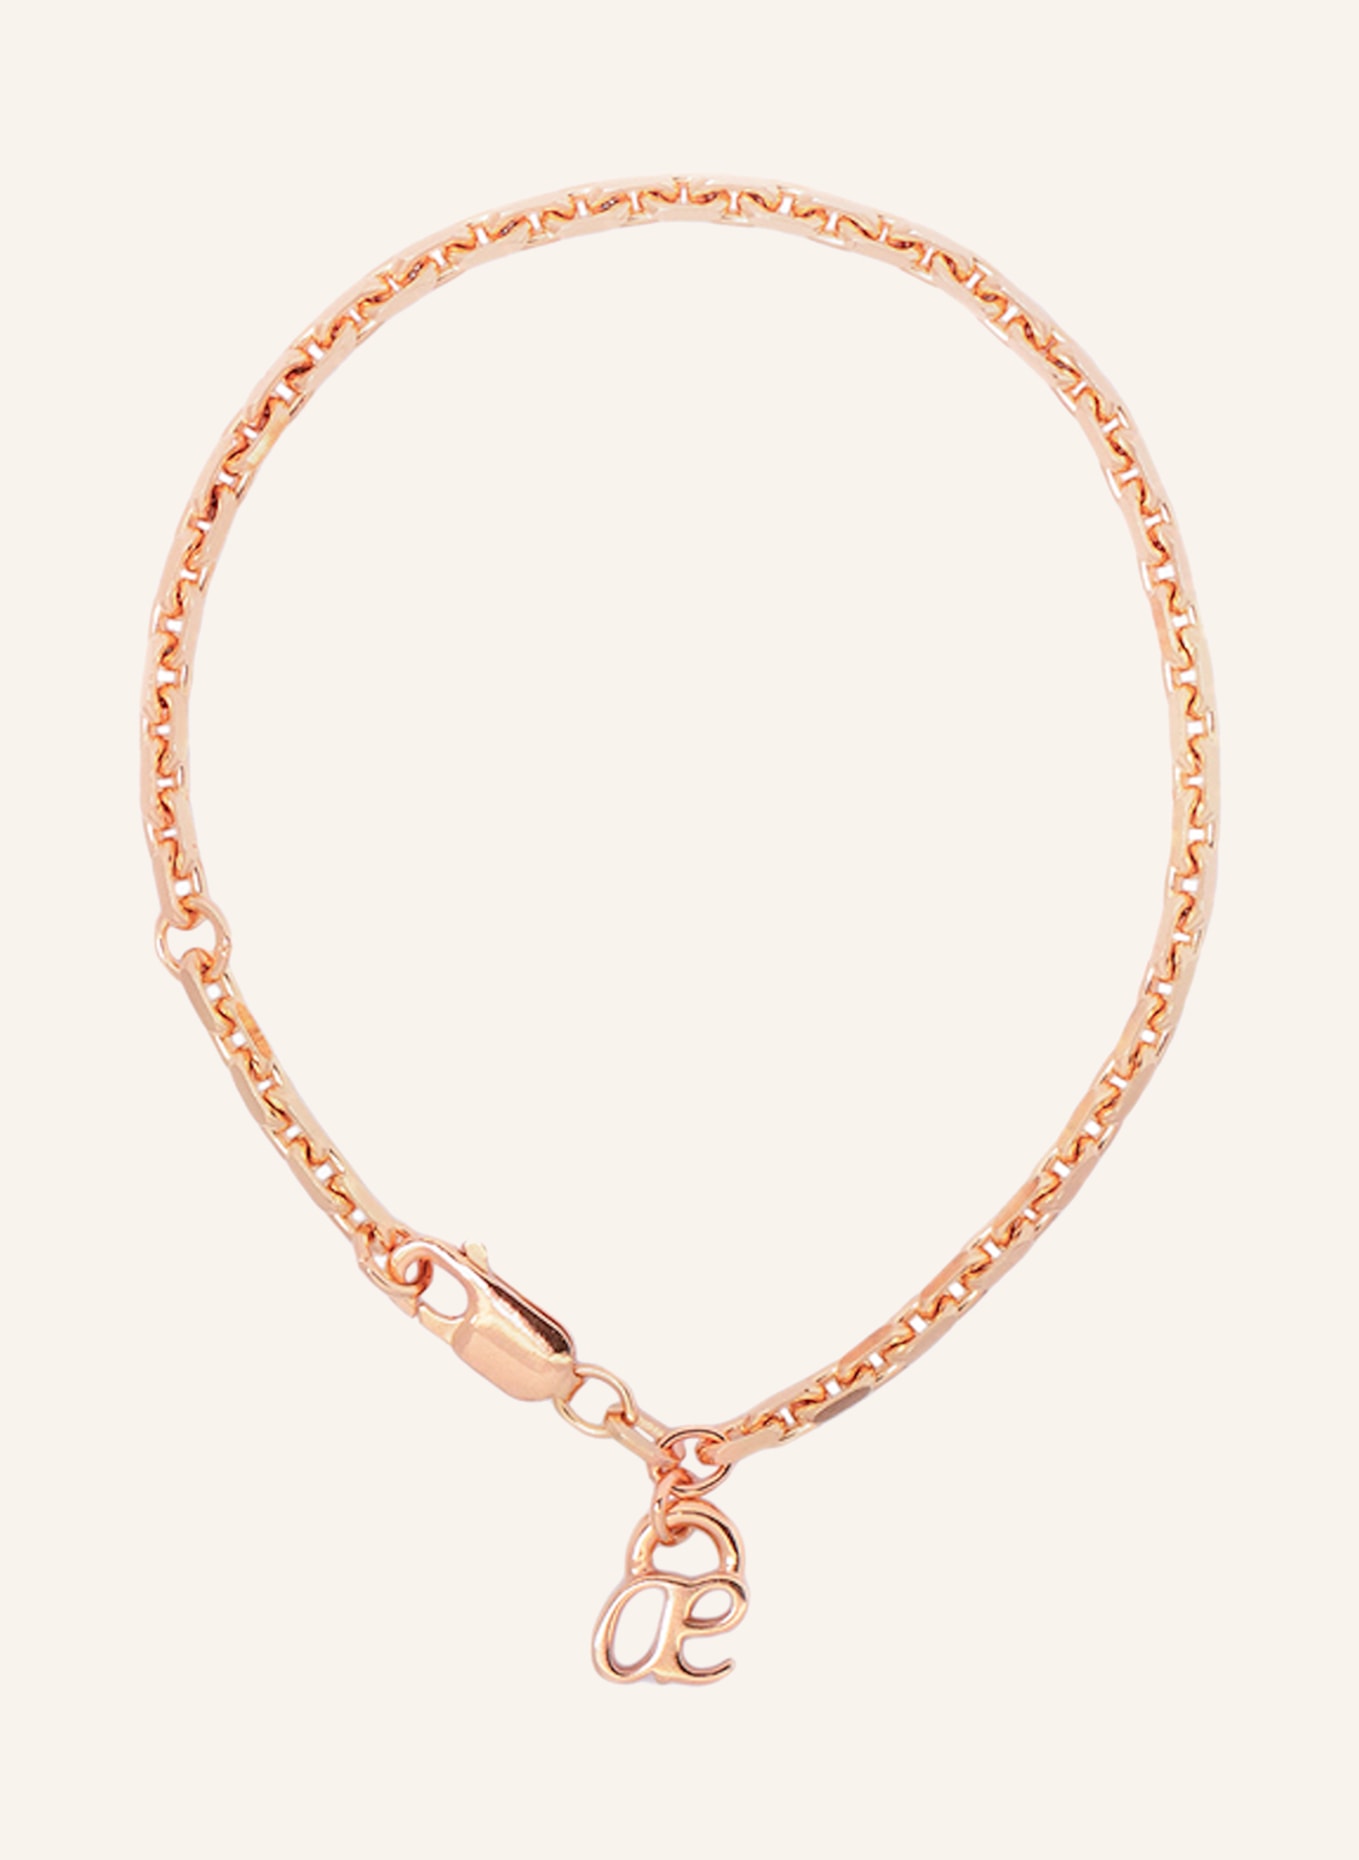 ariane ernst Bracelet BOLD, Color: ROSE GOLD (Image 1)